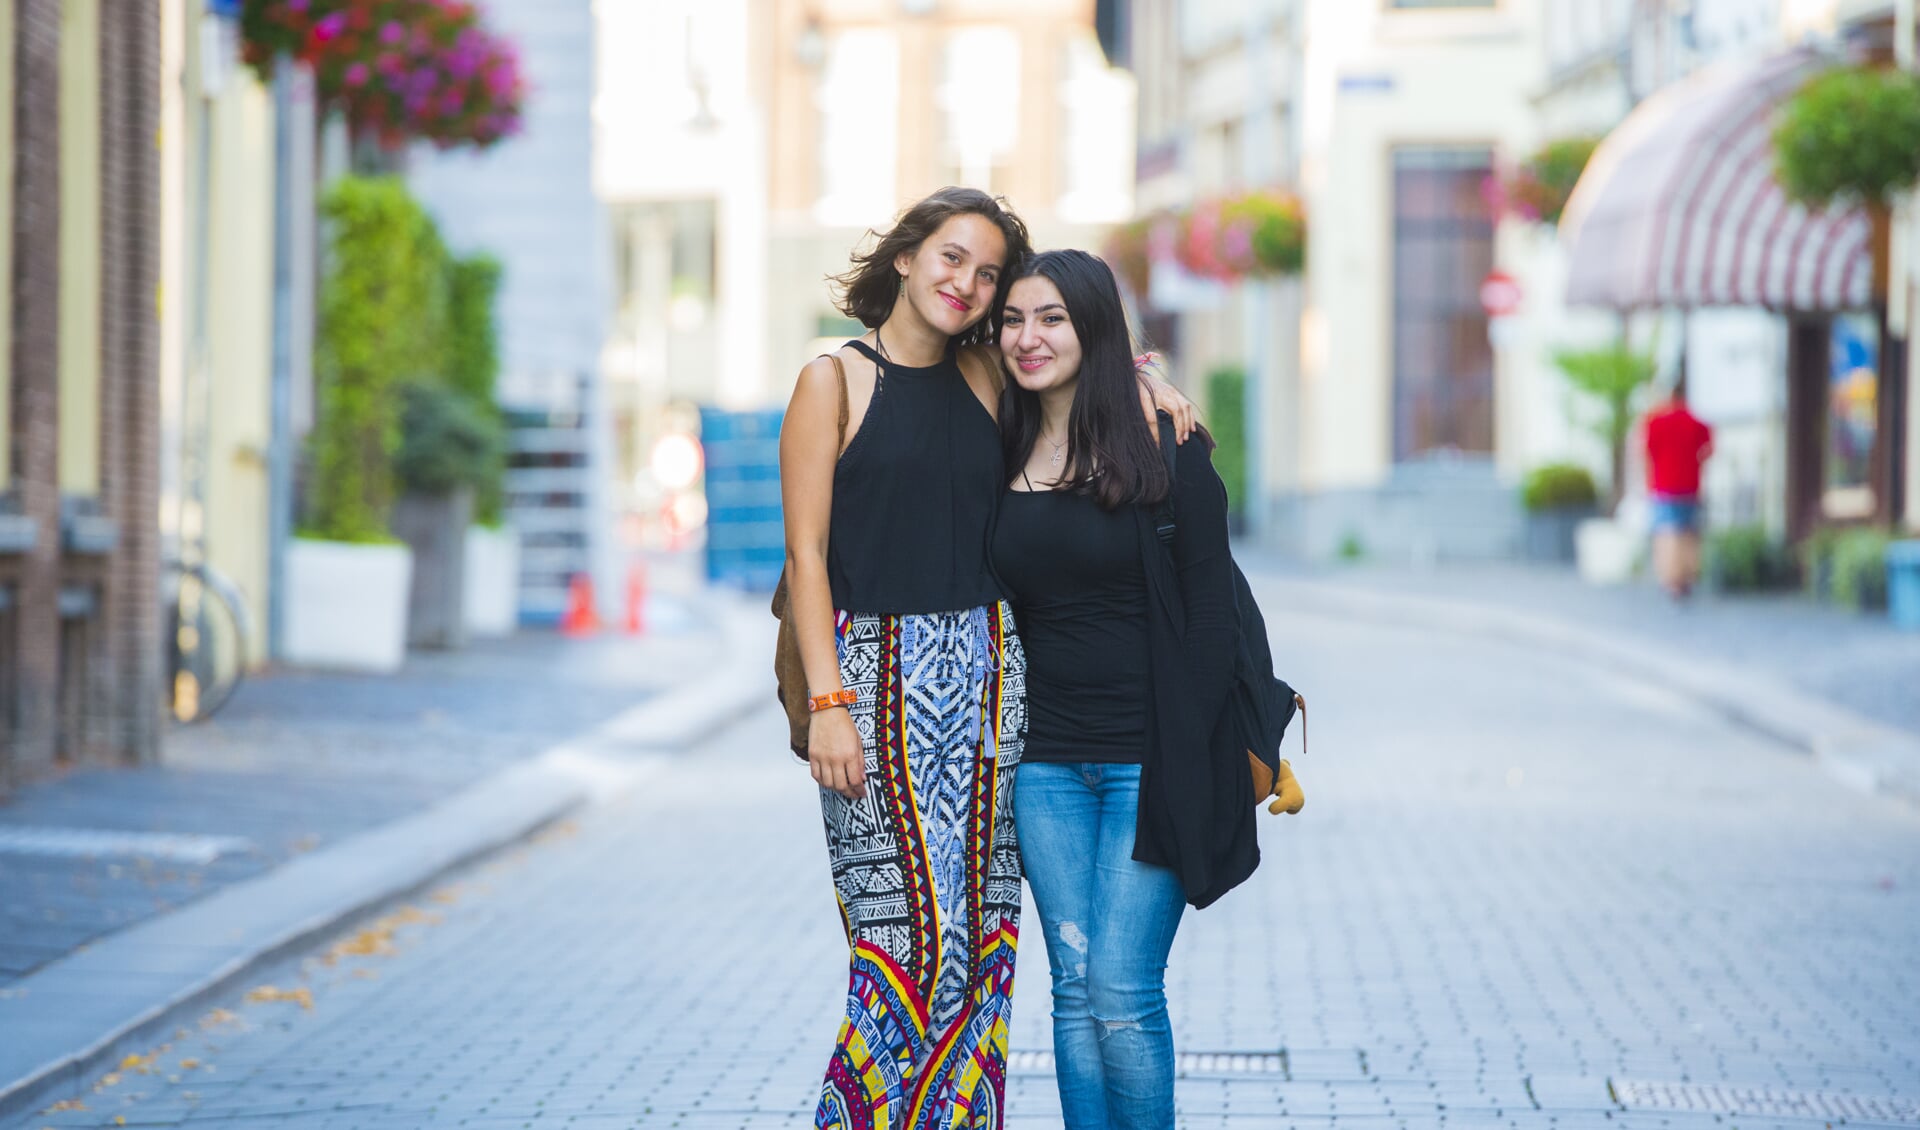 Ritta Bnyamen en Nicole Kuiper zijn dikke vriendinnen en vaak samen te vinden in de stad. Foto: Pim Helmich